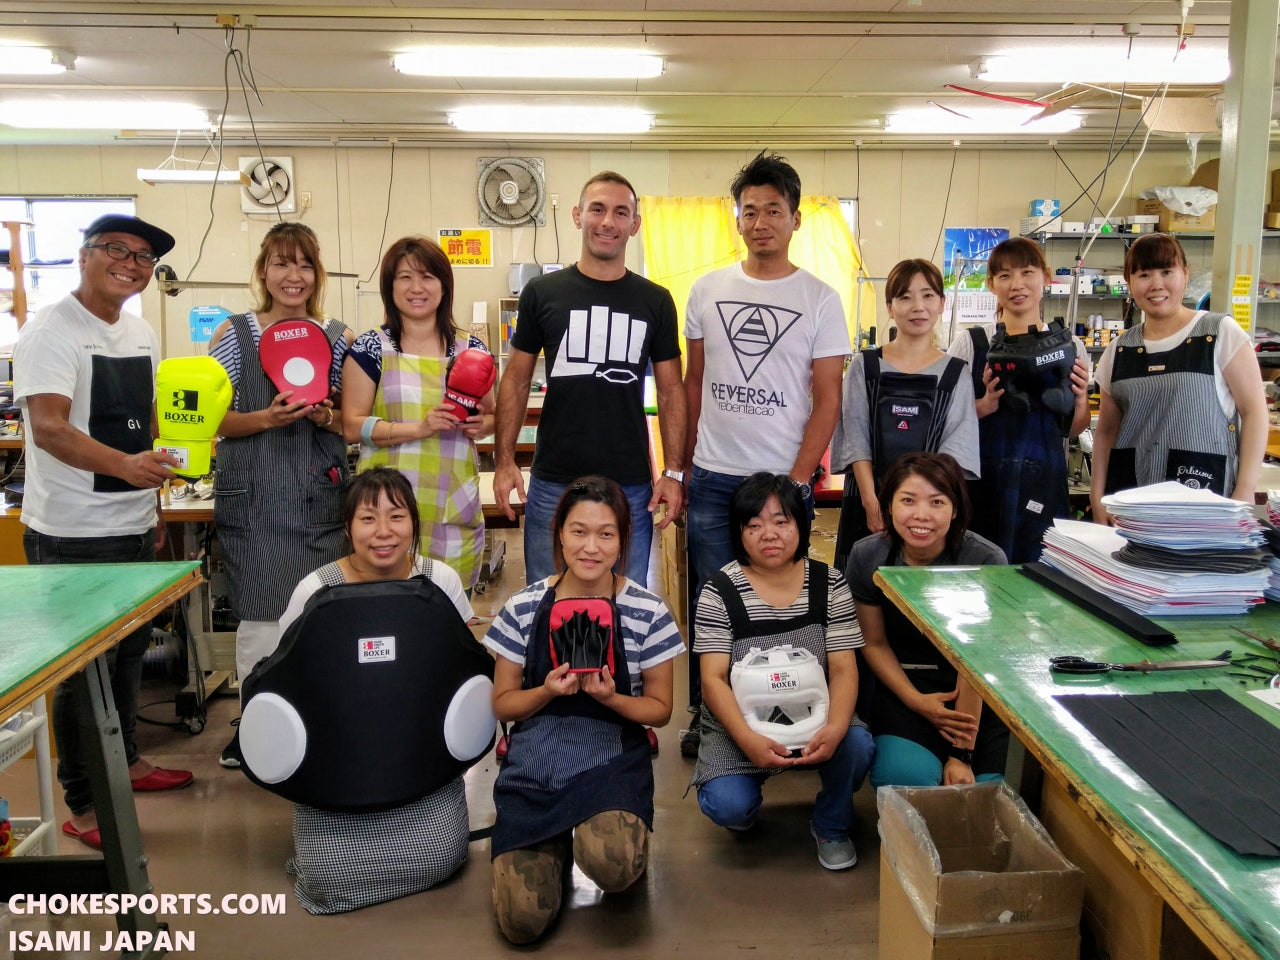 ChokeSports and Isami Teams in Kazo, Japan